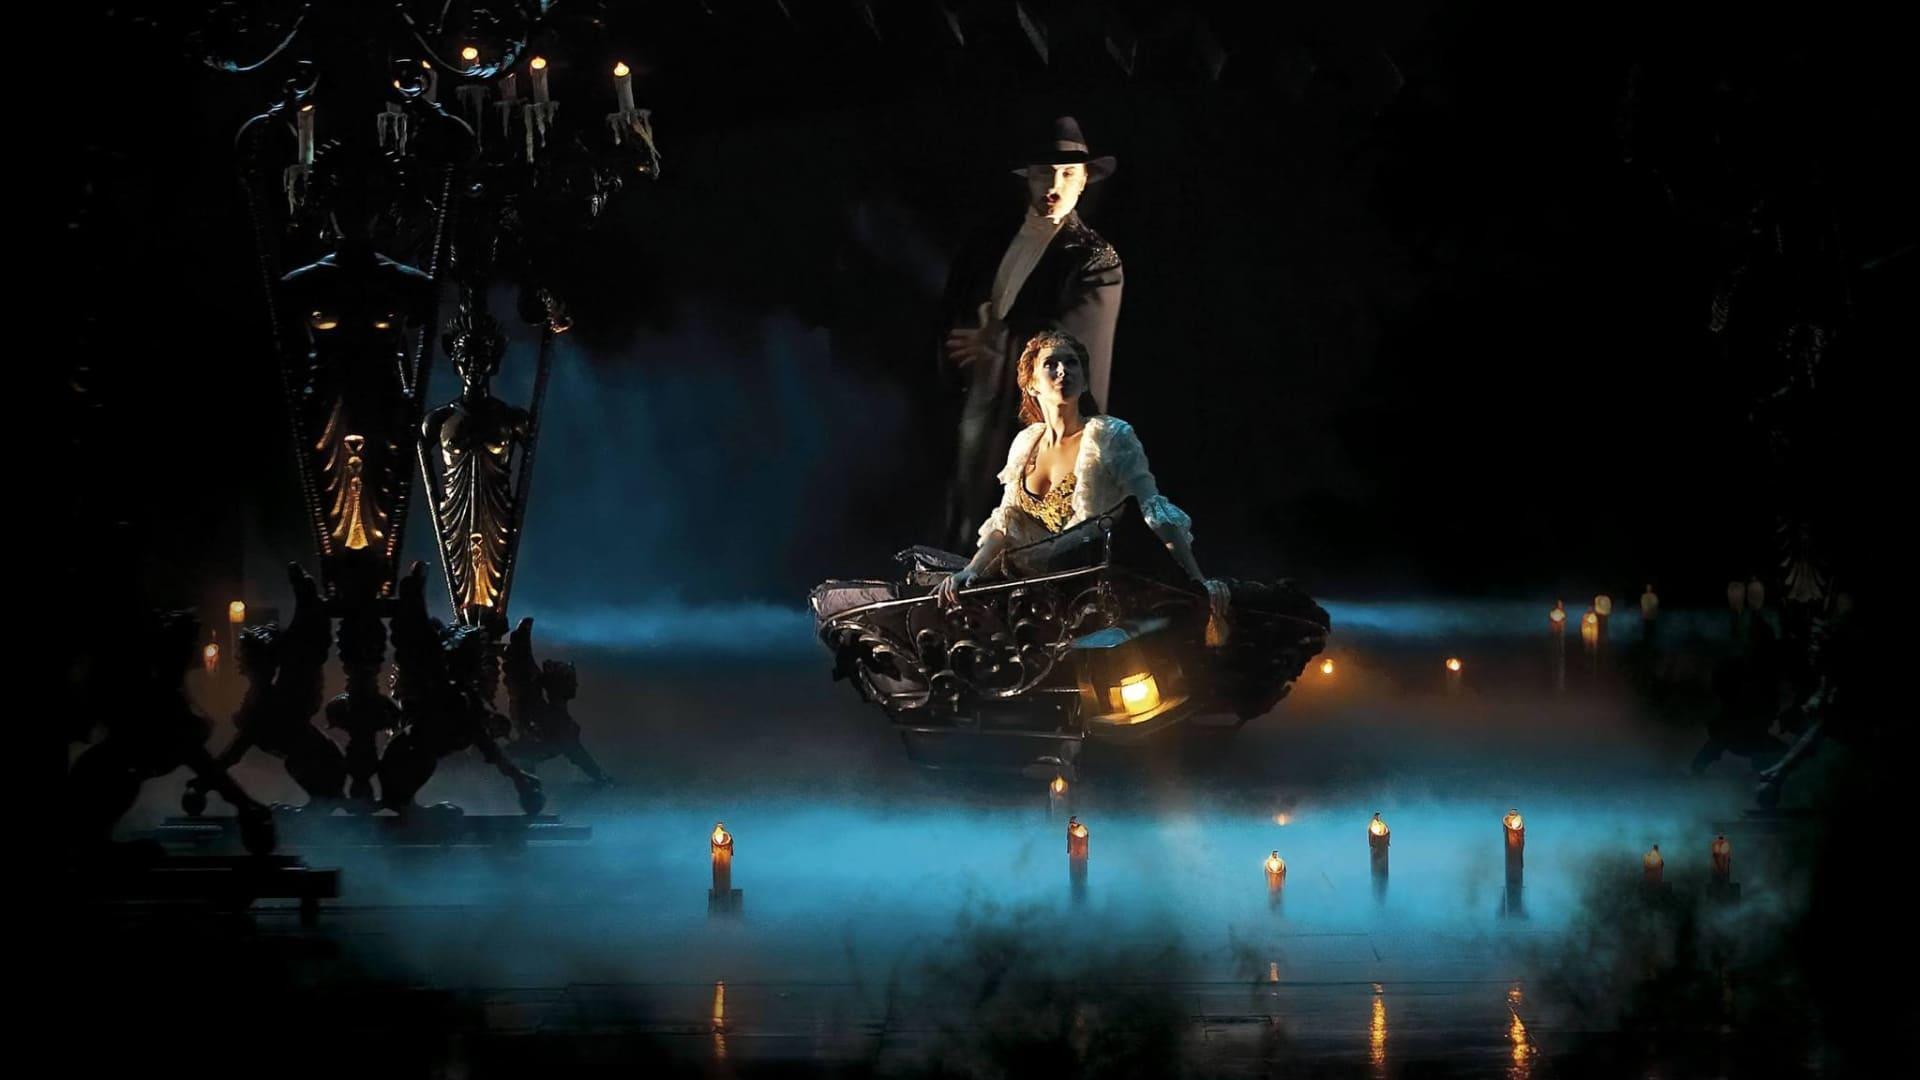 Le fantôme de l'Opéra, personnage du roman de Gaston Leroux, hanterait les sous-sols de l'opéra